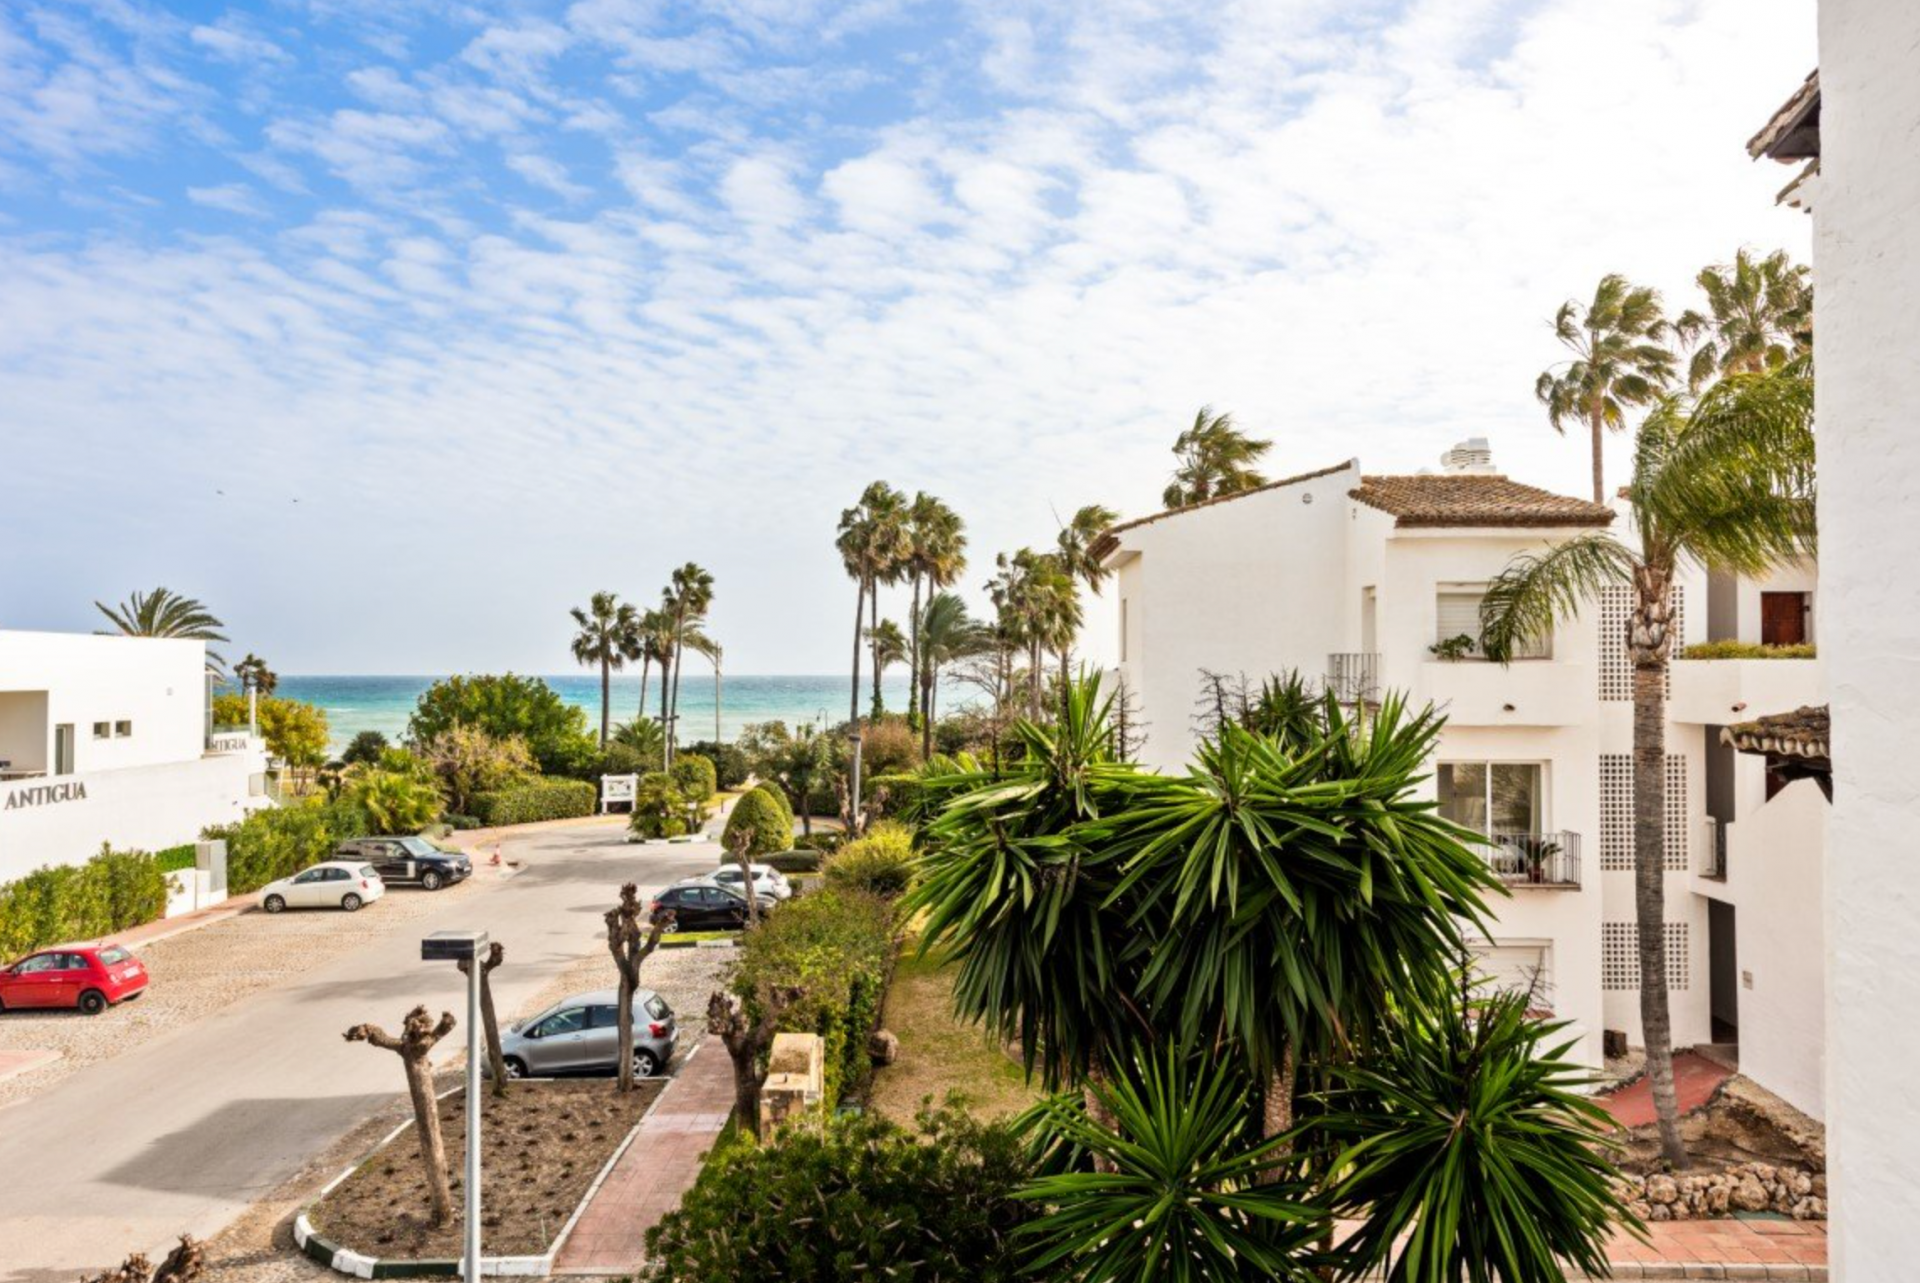 Maravilloso ático con vistas al mar situado en el complejo privado junto a la playa de Costalita